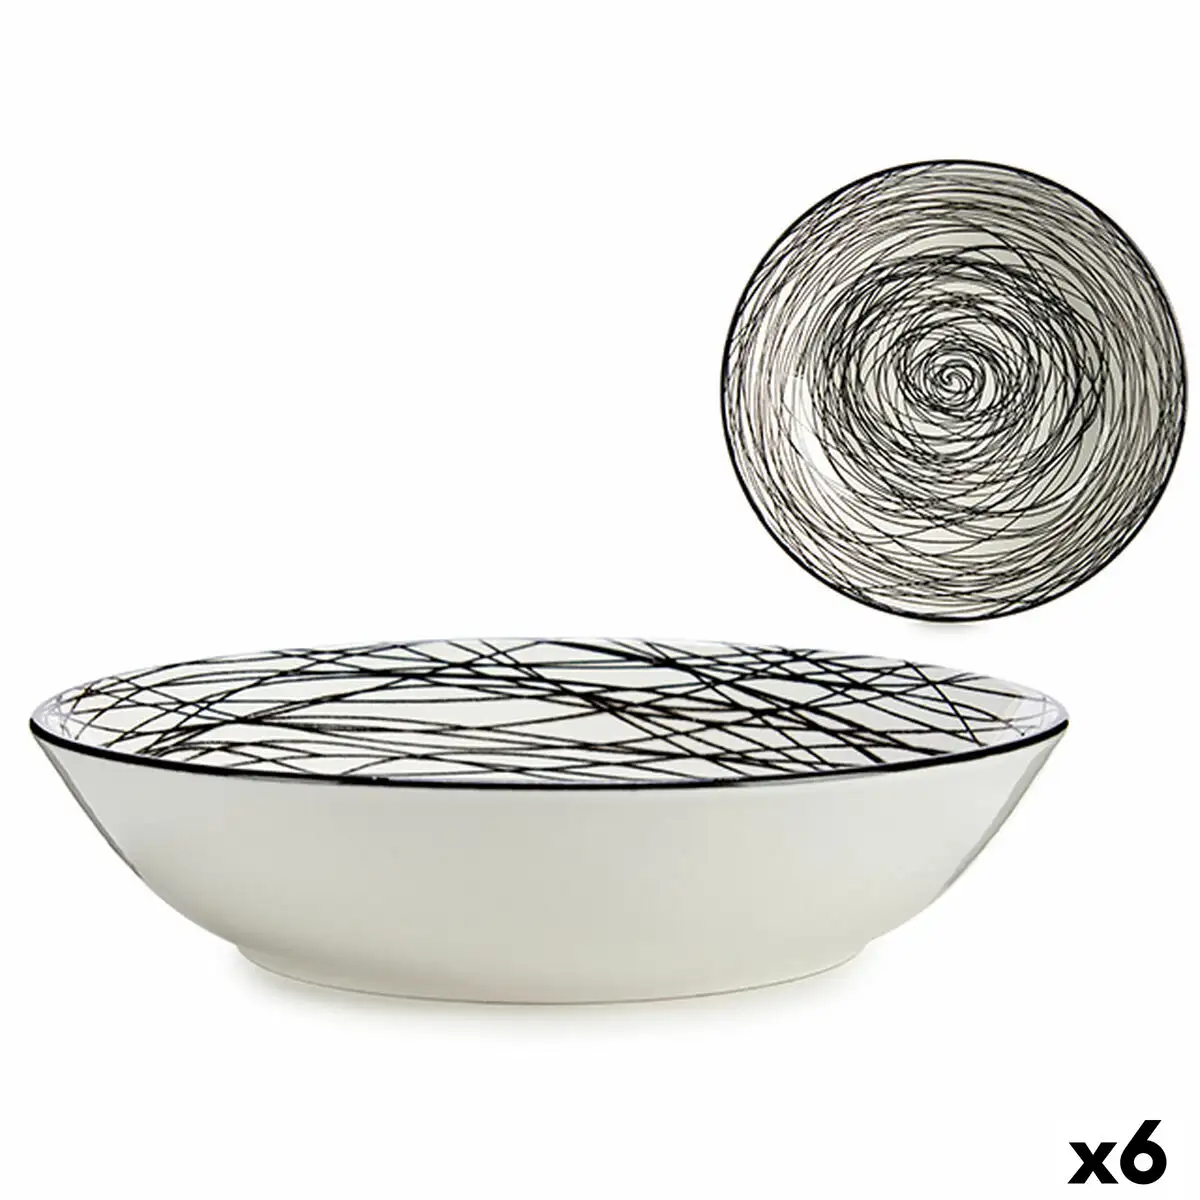 Assiette creuse rayures porcelaine noir blanc 6 unites 20 x 4 7 x 20 cm _9637. DIAYTAR SENEGAL - Votre Portail Vers l'Exclusivité. Explorez notre boutique en ligne pour trouver des produits uniques et exclusifs, conçus pour les amateurs de qualité.